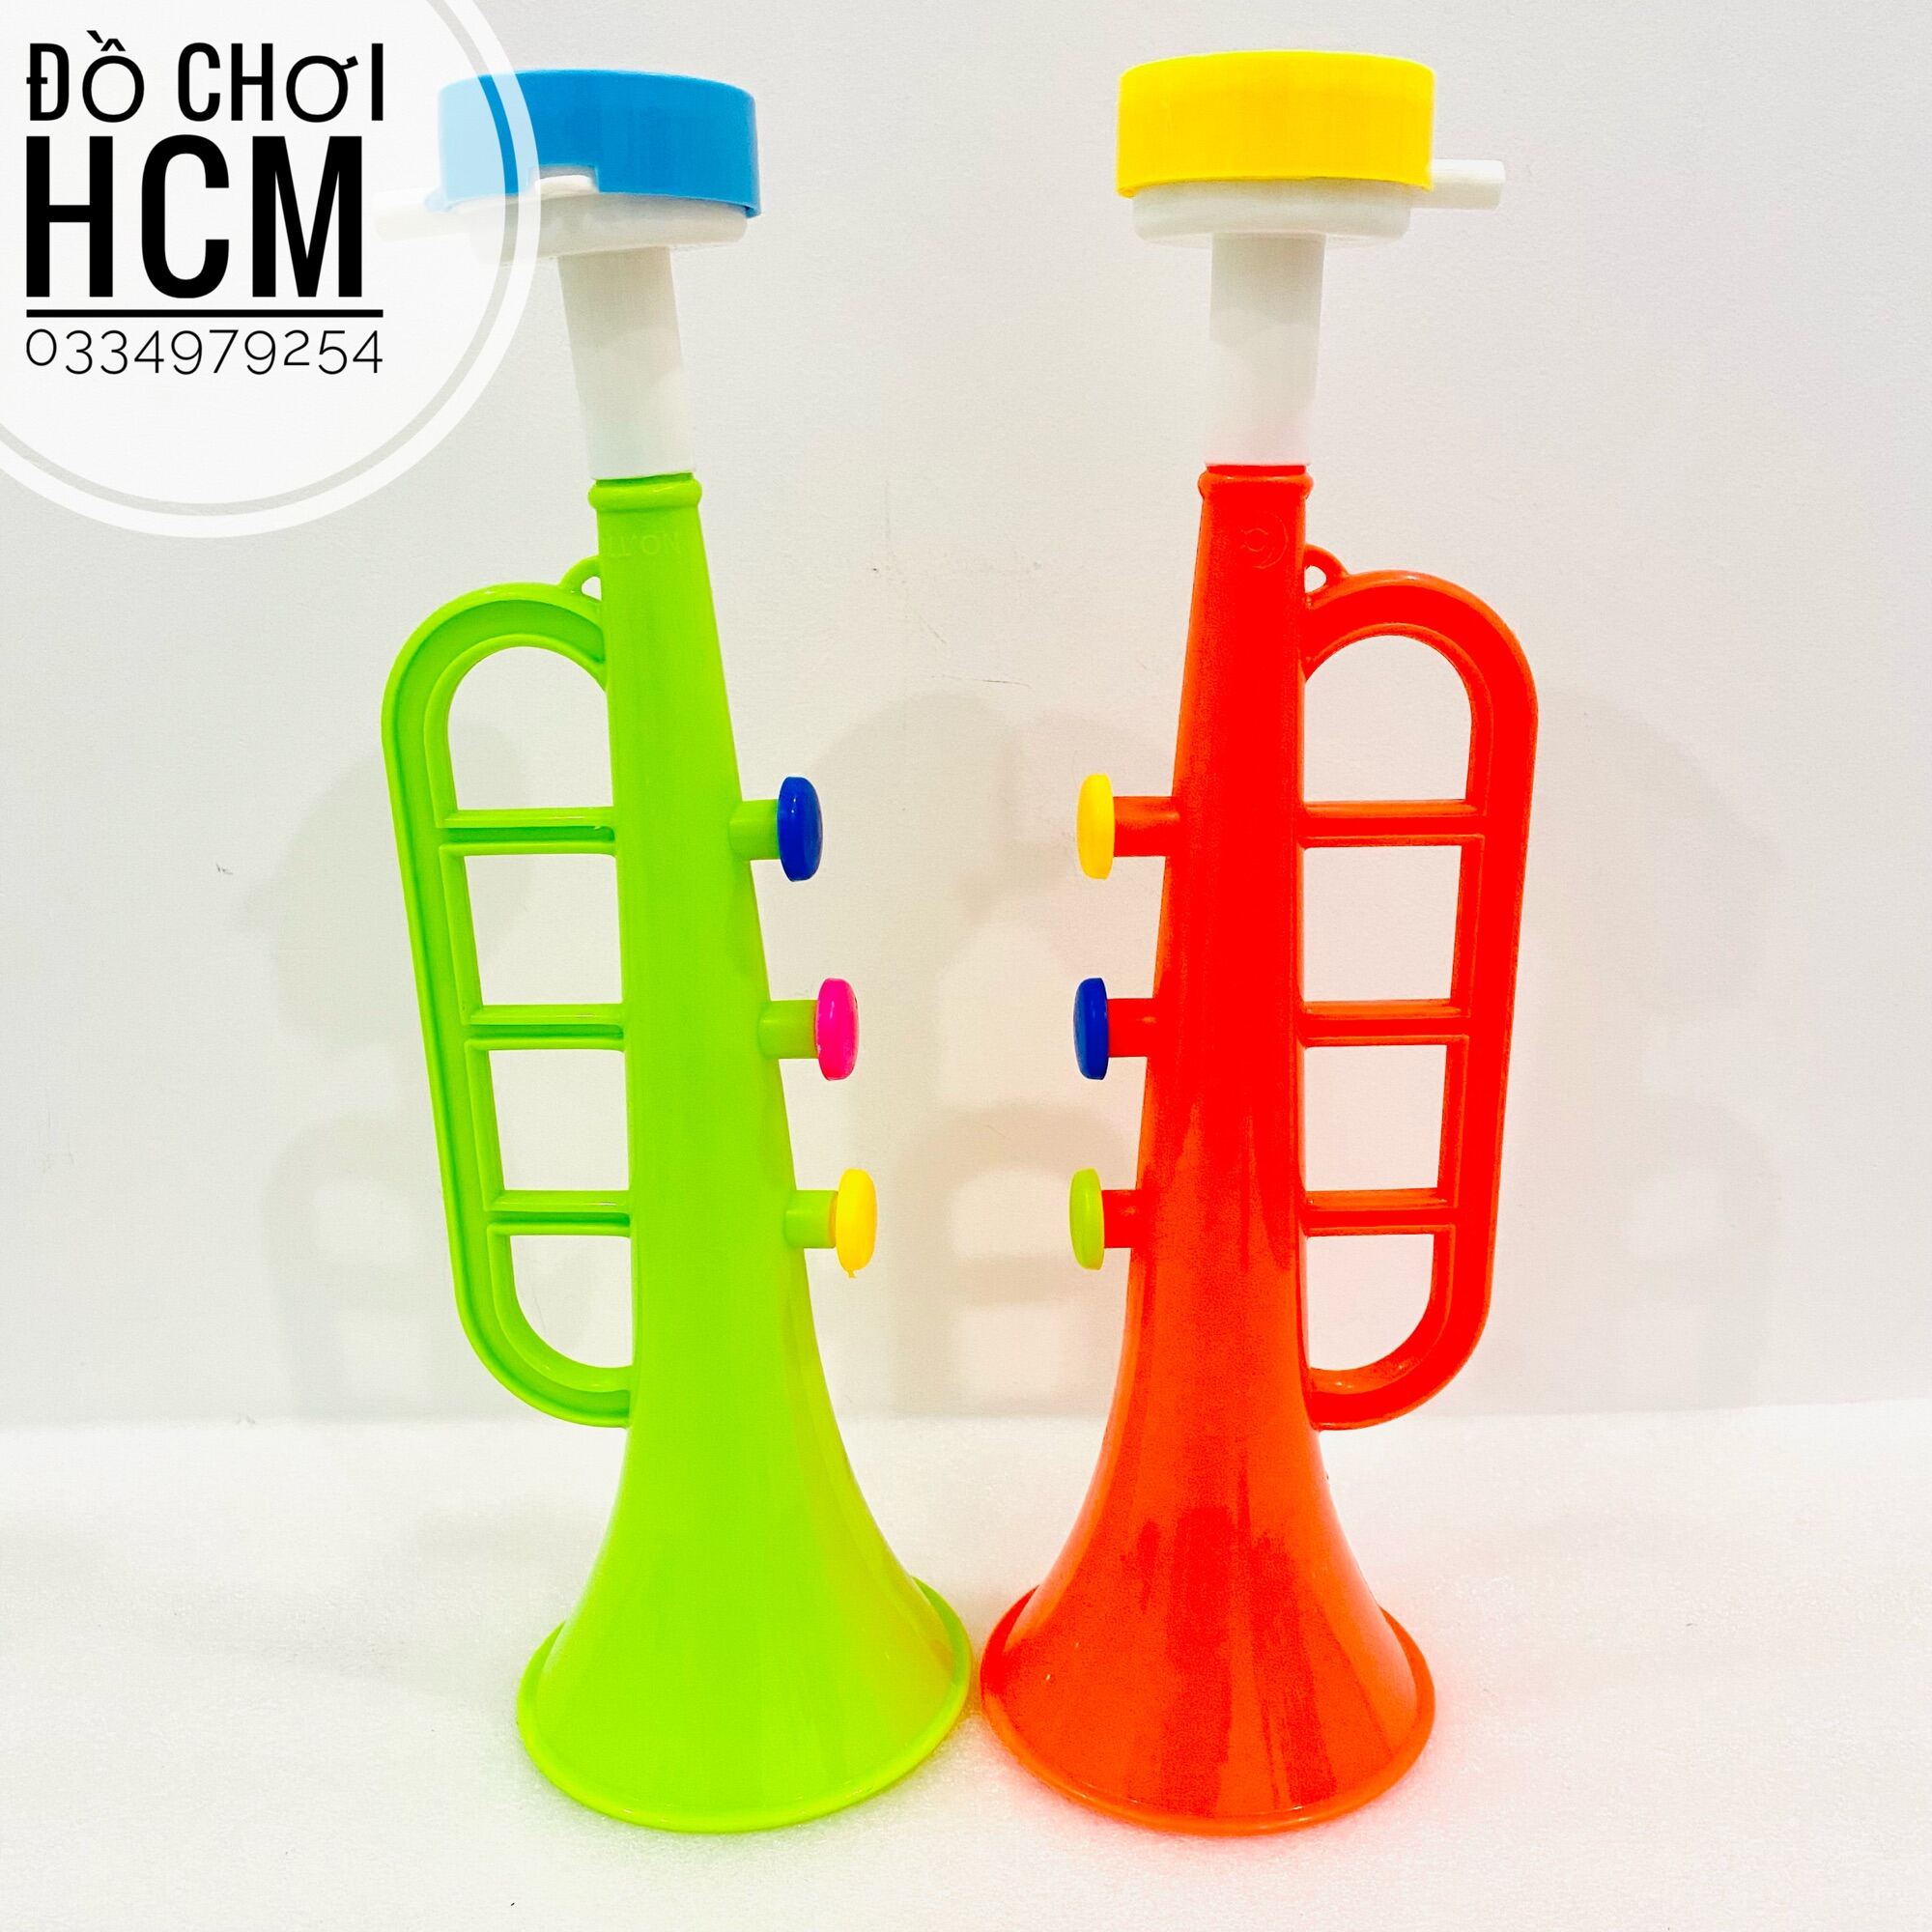 [RẺ ĐẸP] Đồ chơi trẻ em kèn trumpet dành cho bé thích khám phá các loại nhạc cụ, âm nhạc, cổ vũ, cổ động bóng đá